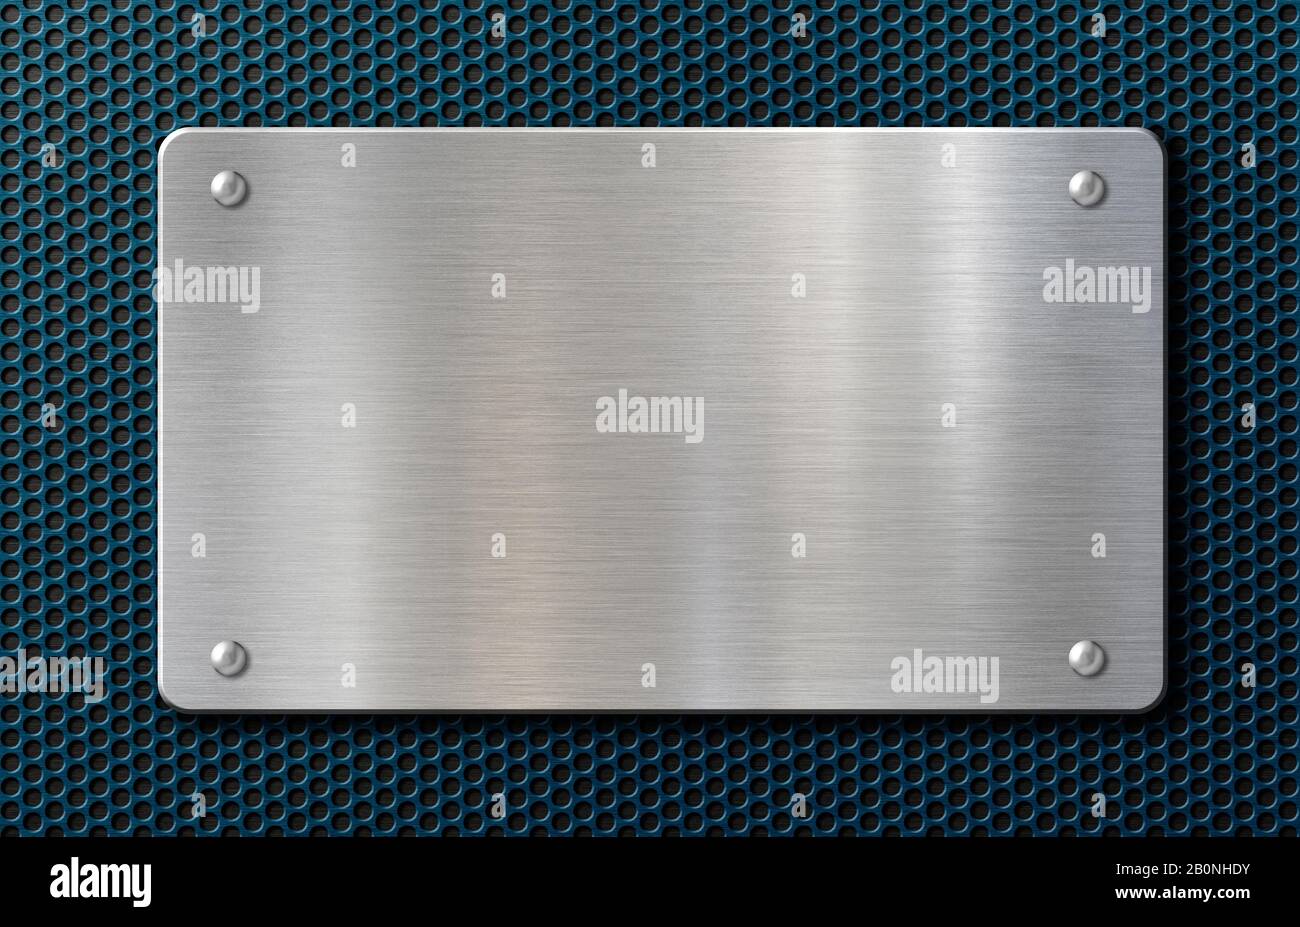 plaque ou plaque métallique avec rivets sur fond bleu Banque D'Images